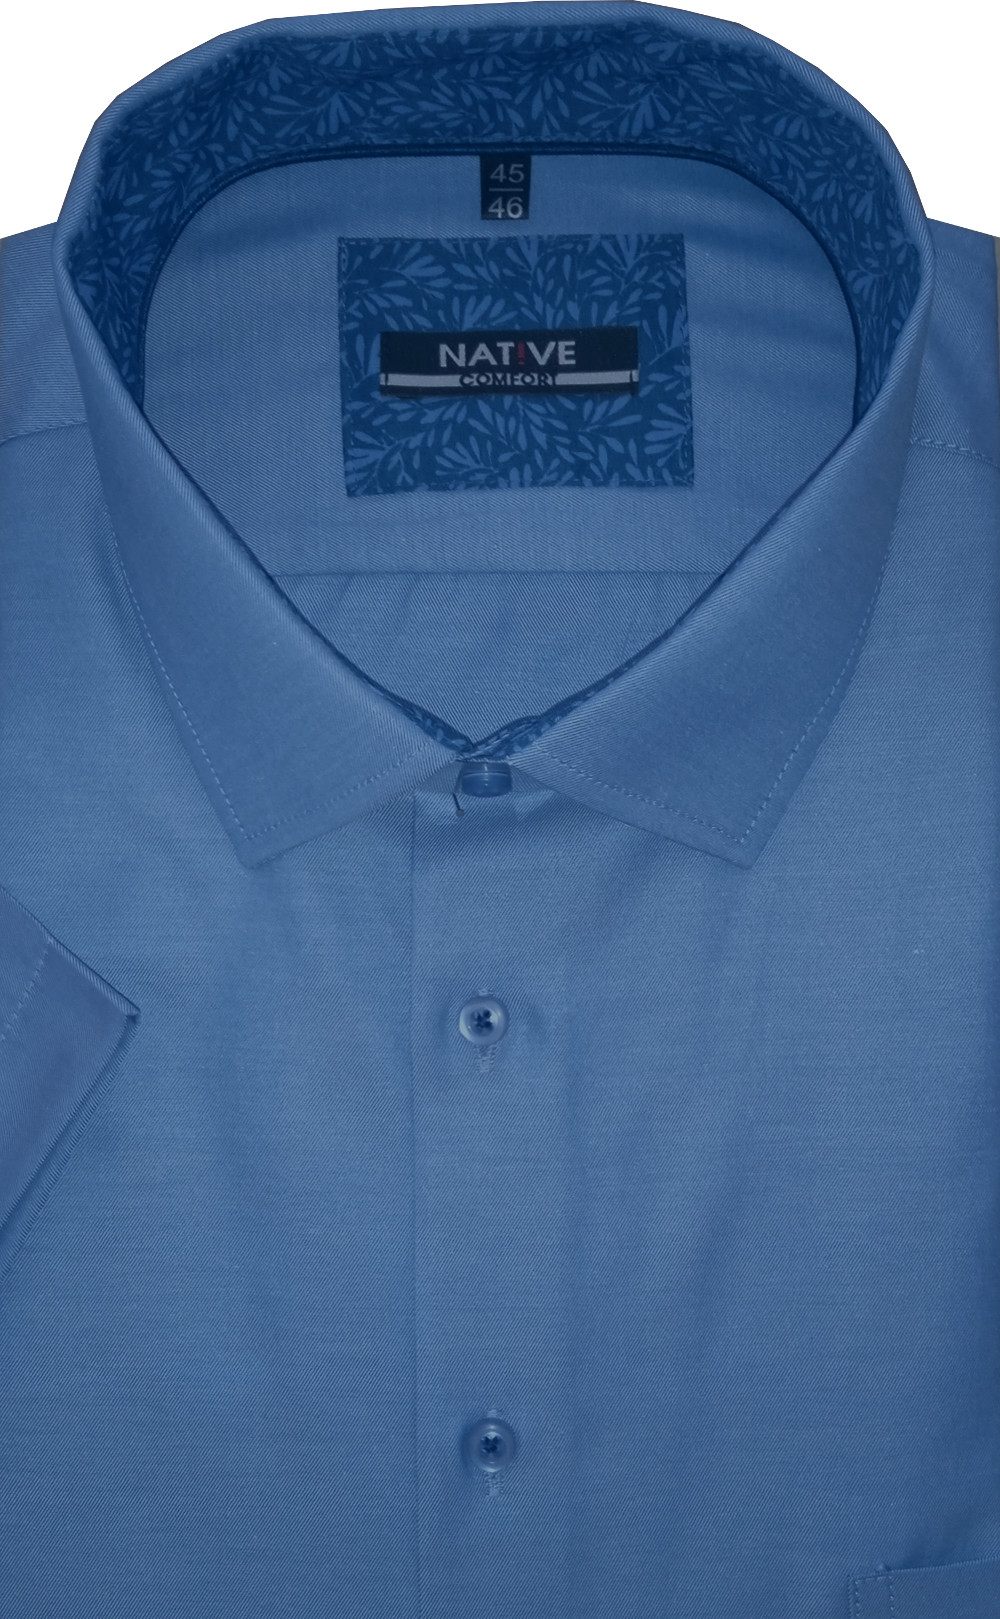 Pánská košile (modrá) s krátkým rukávem, vel. 45/46 - N220/316